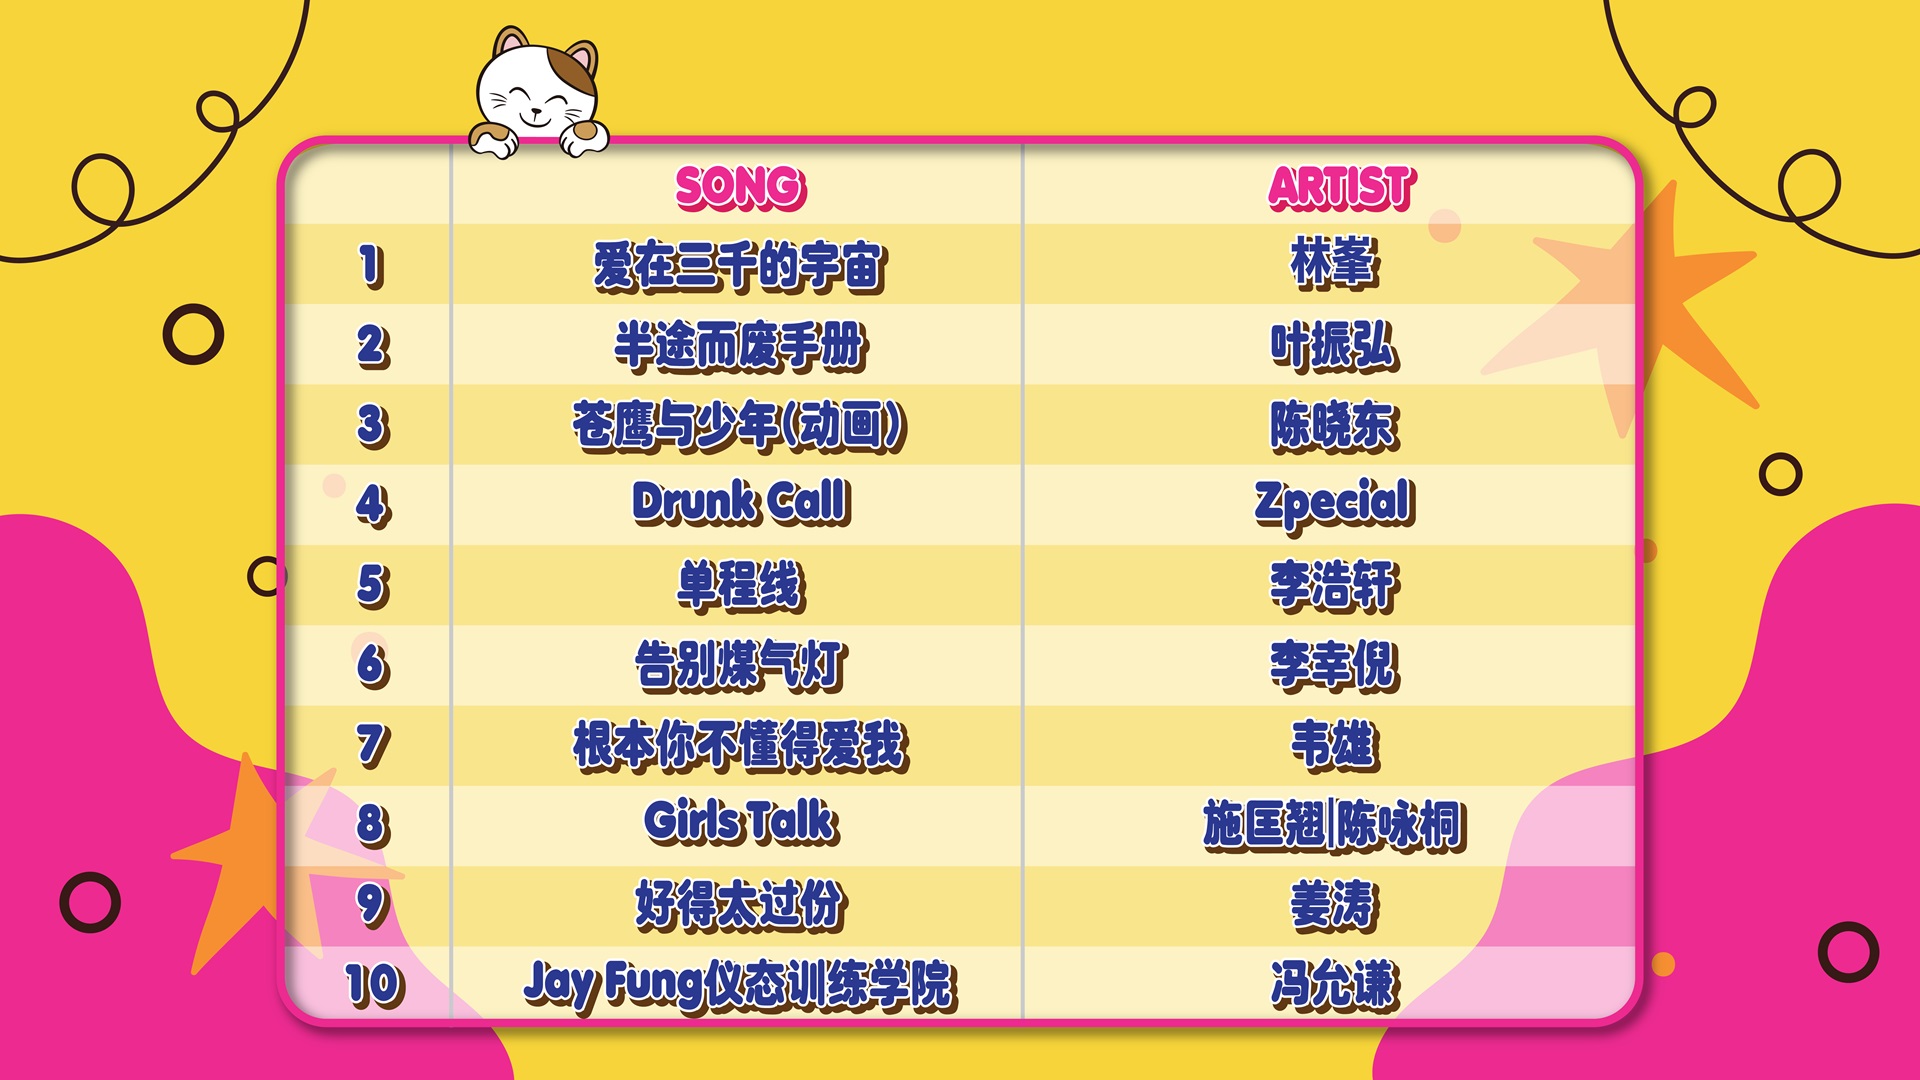 Song list_June_2 (1)